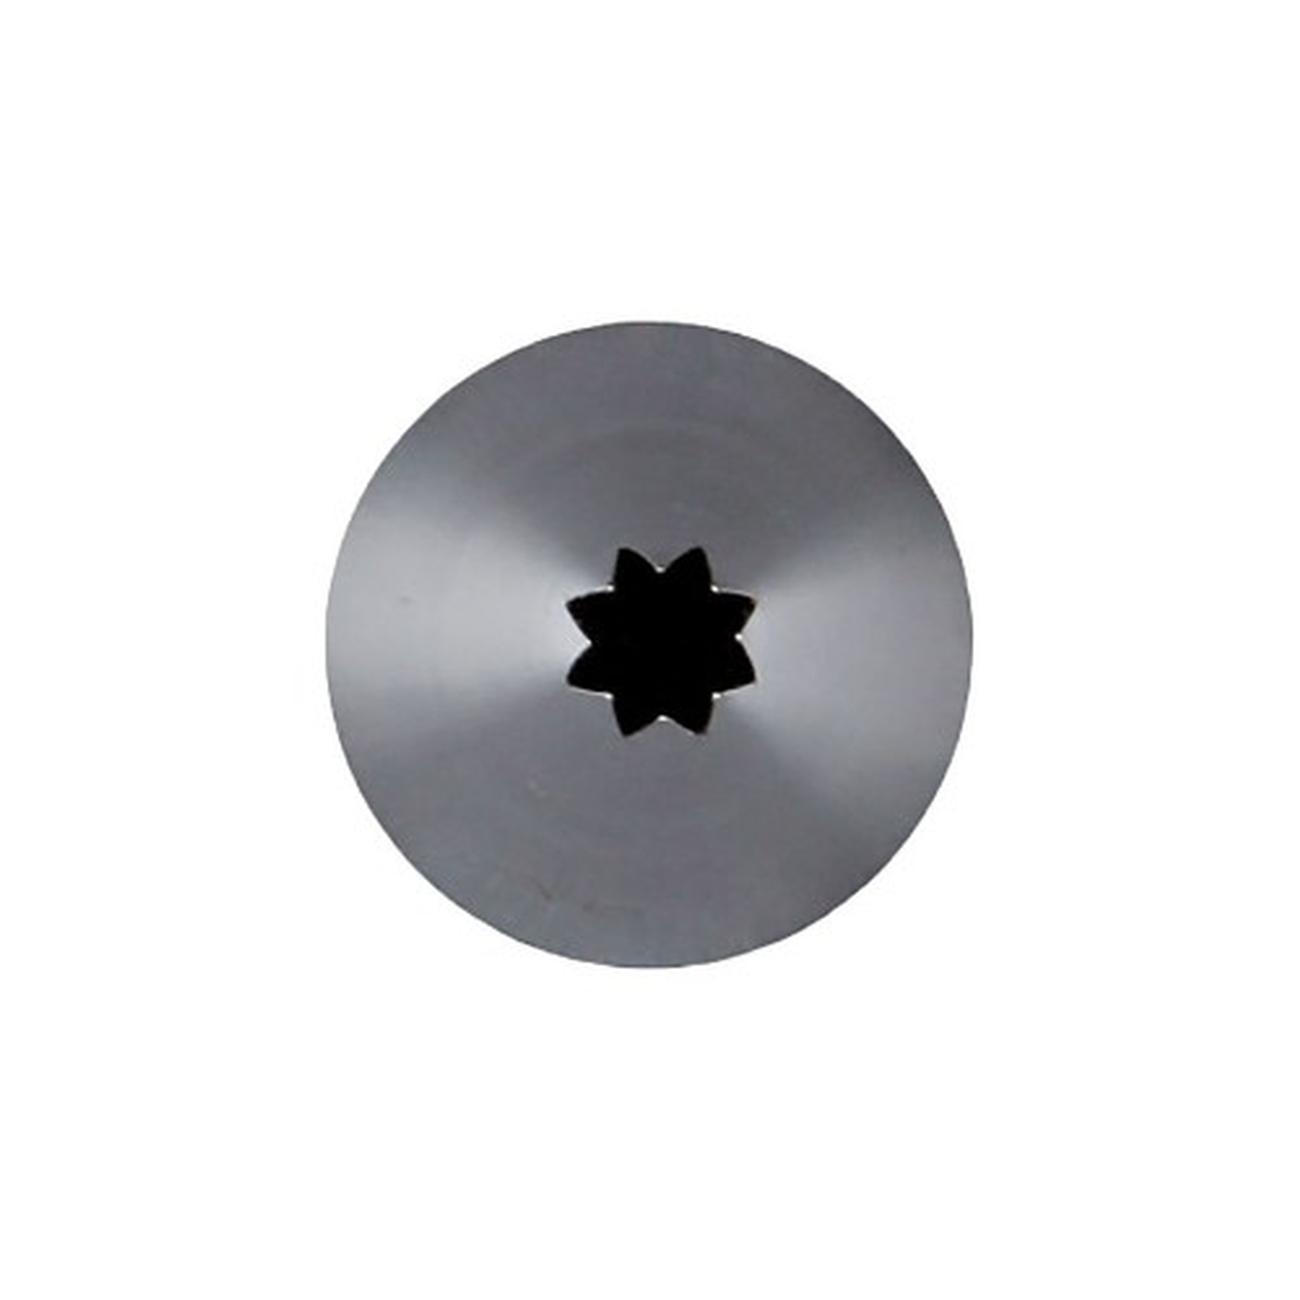 de-buyer-stainless-steel-star-nozzle-A8 - de Buyer Inox Star Nozzle A8